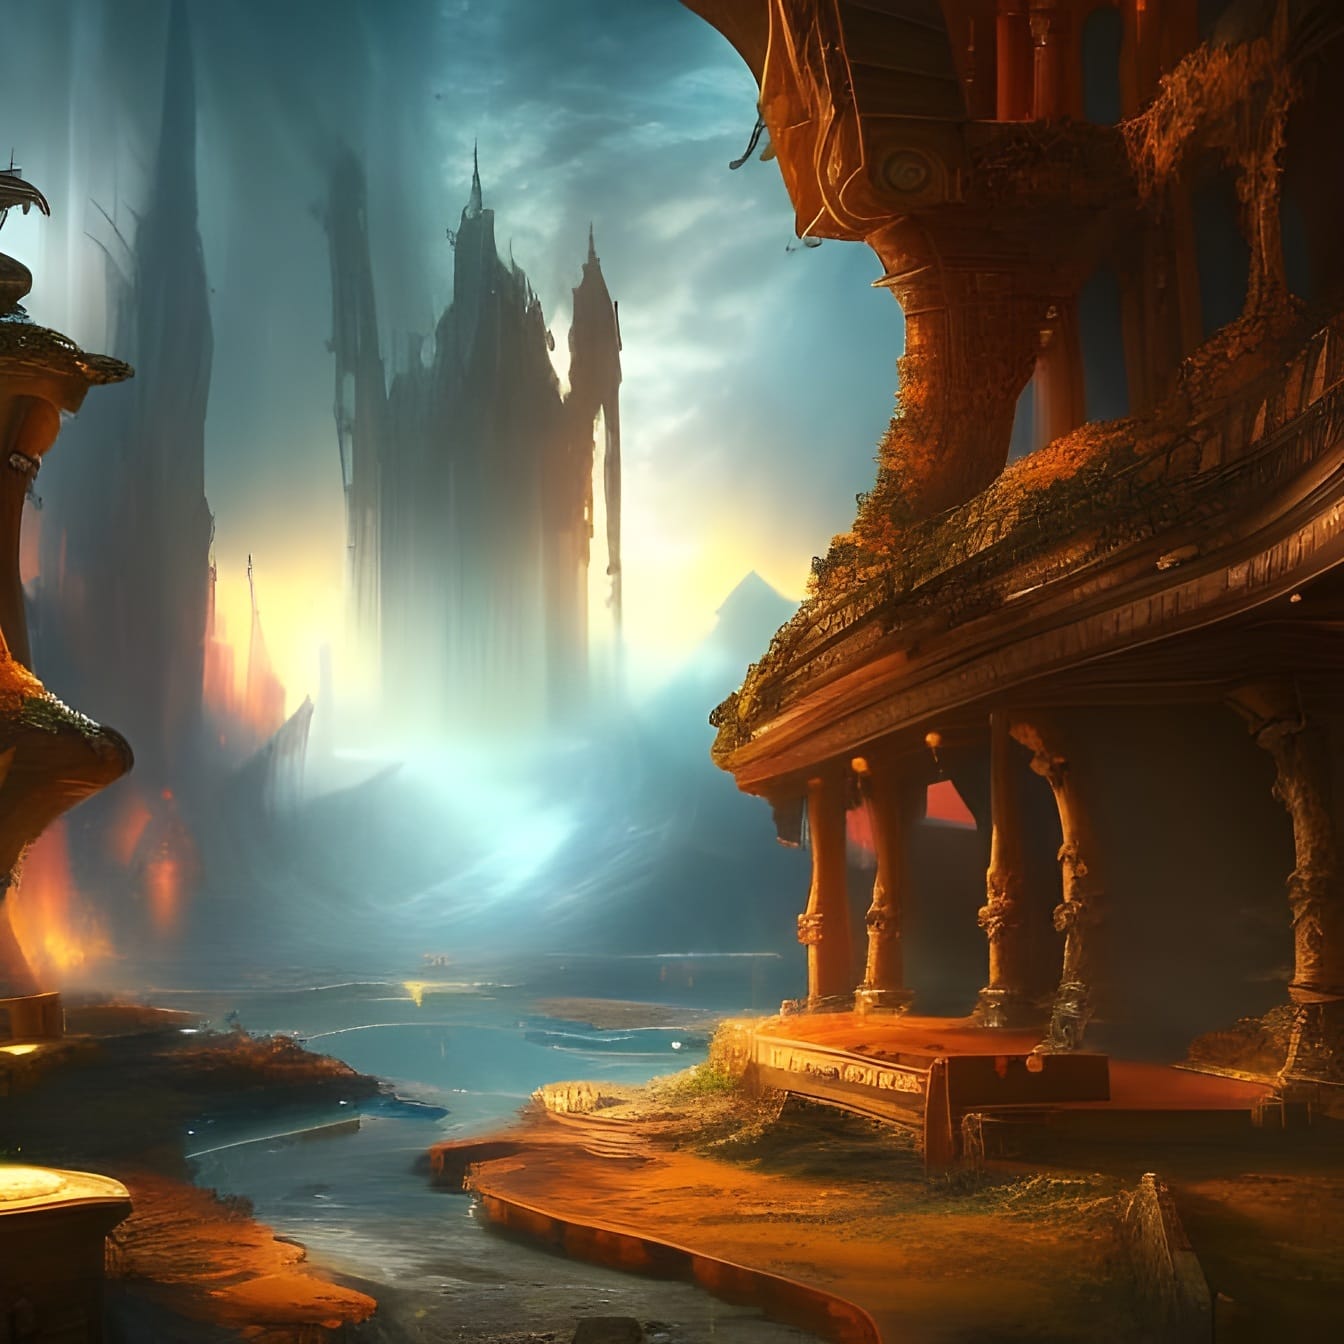 Futuristická ilustrácia kúzelnej rozprávky fantasy sveta